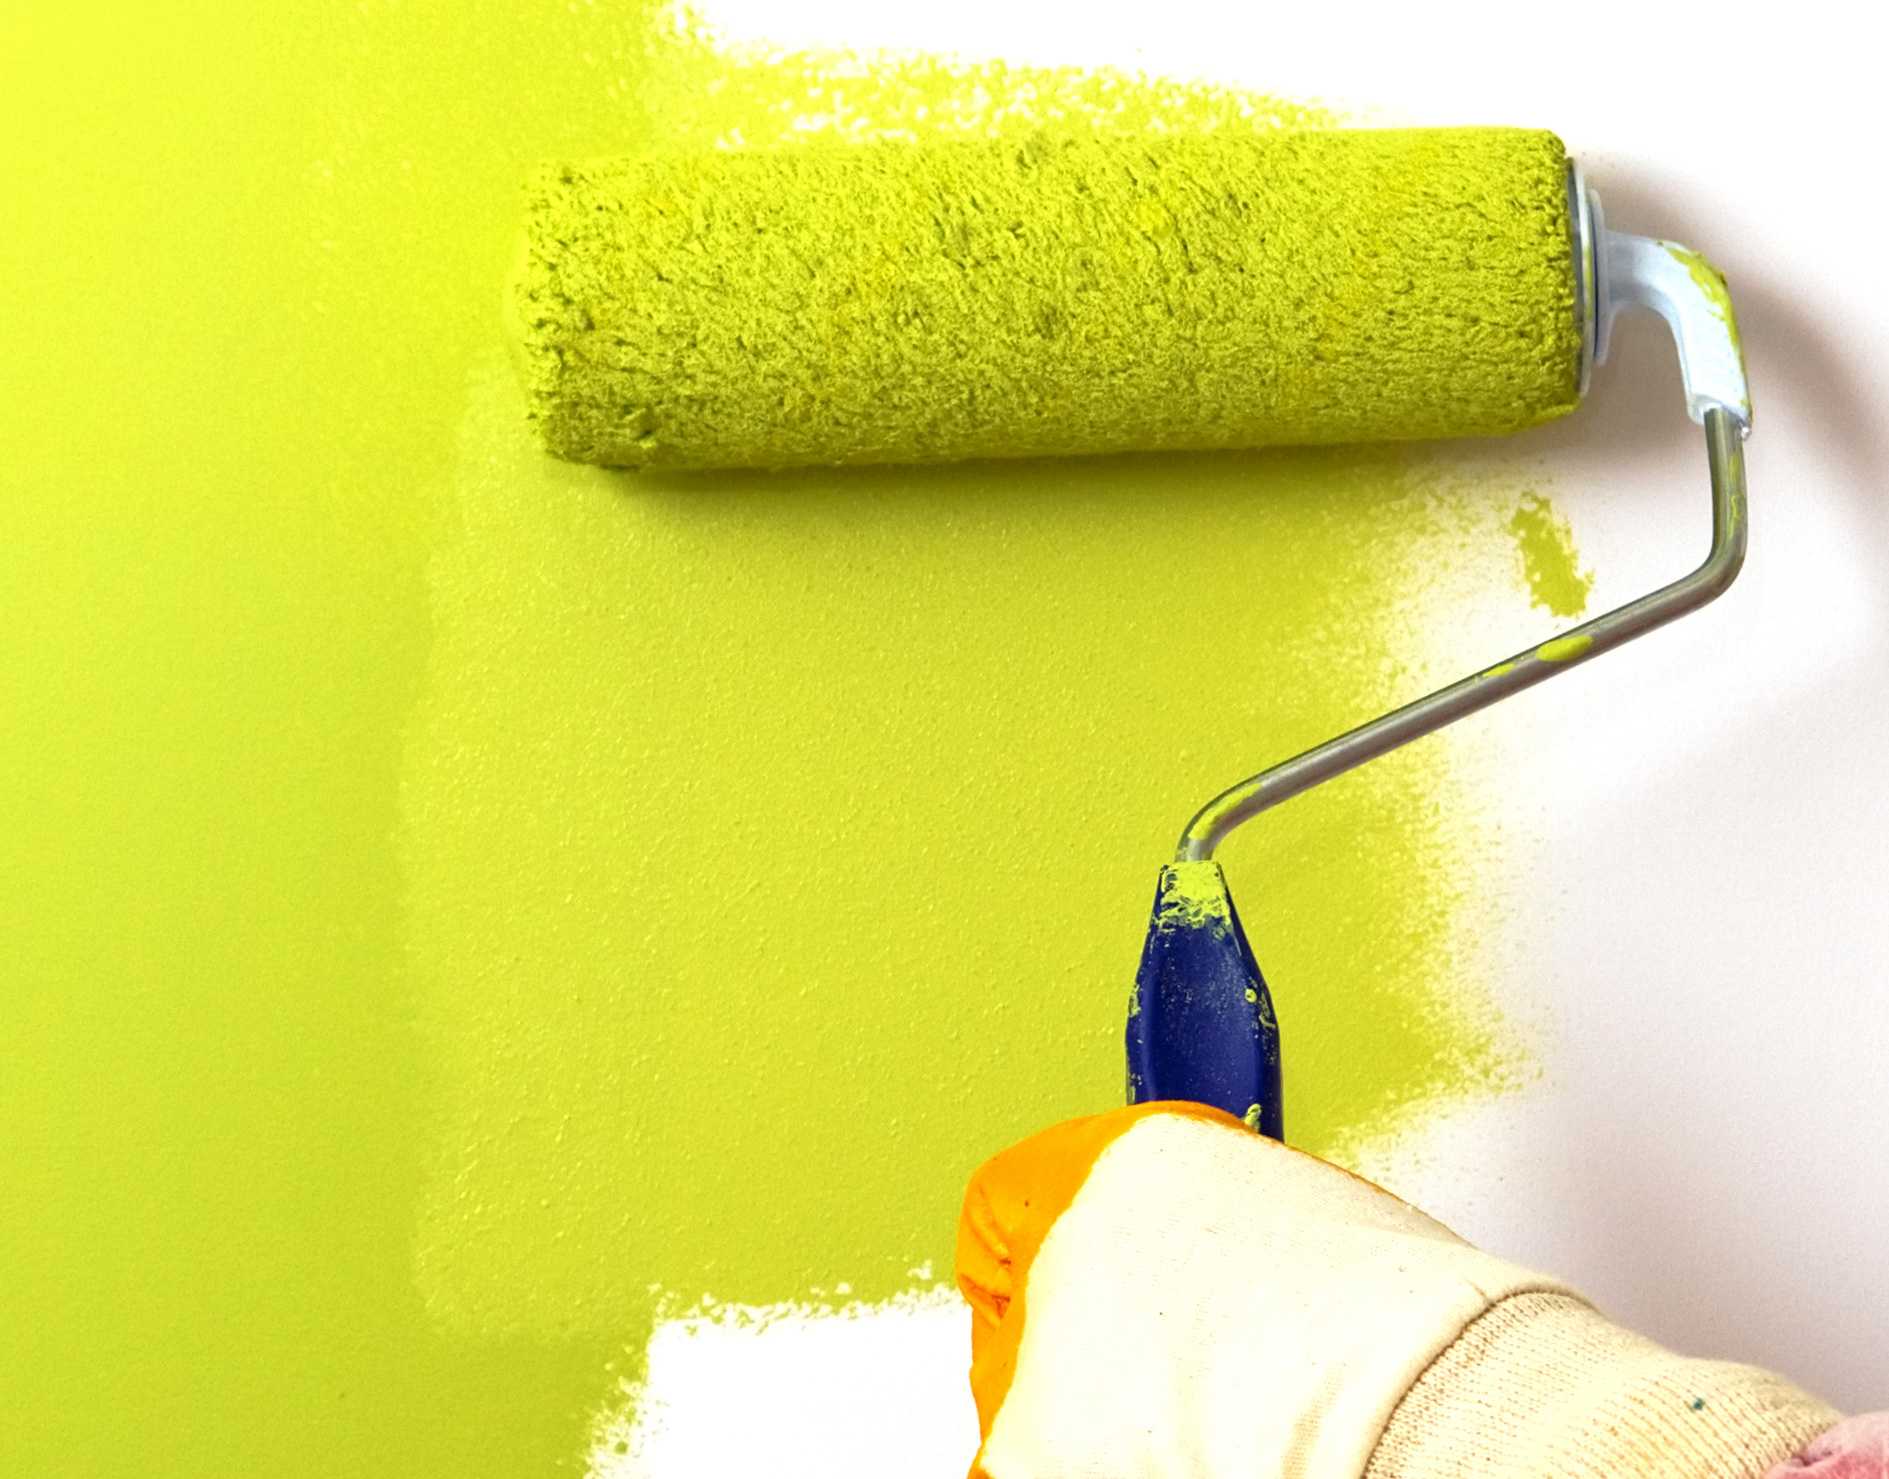 Каким валиком красить потолок, если используется водоэмульсионная краска? как лучше выбрать и какой нужен для покраски стен